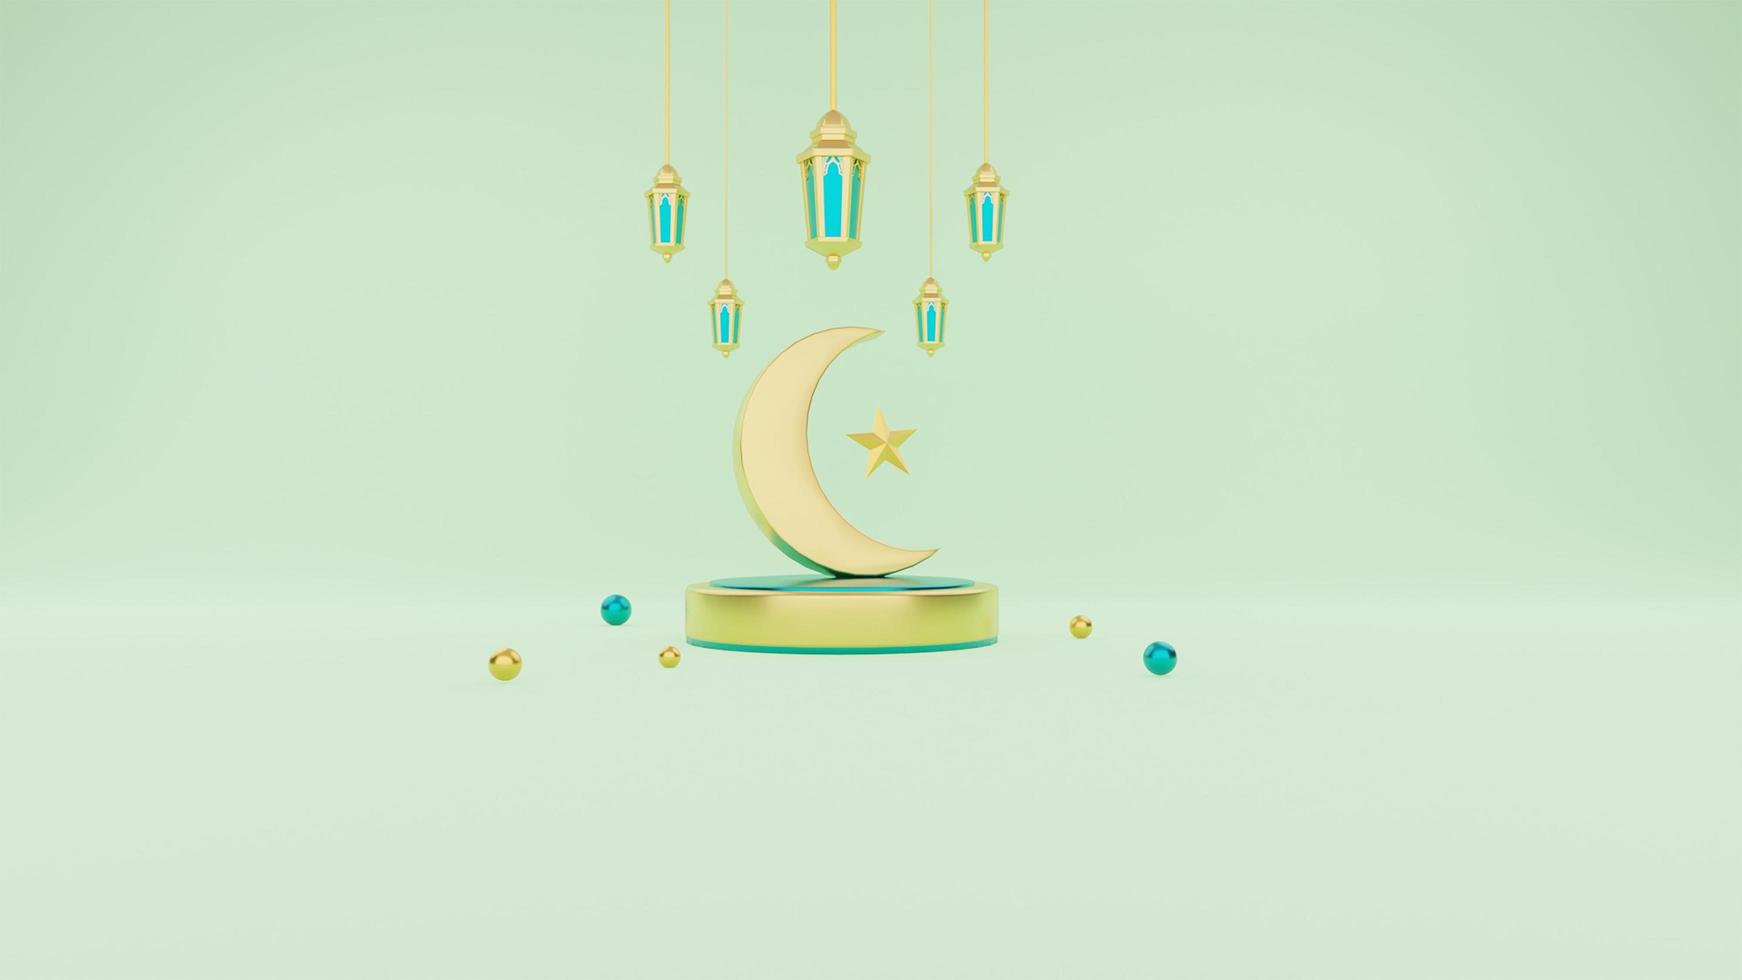 saludos islámicos de ramadán, composición con linterna árabe 3d y luna creciente en el podio foto